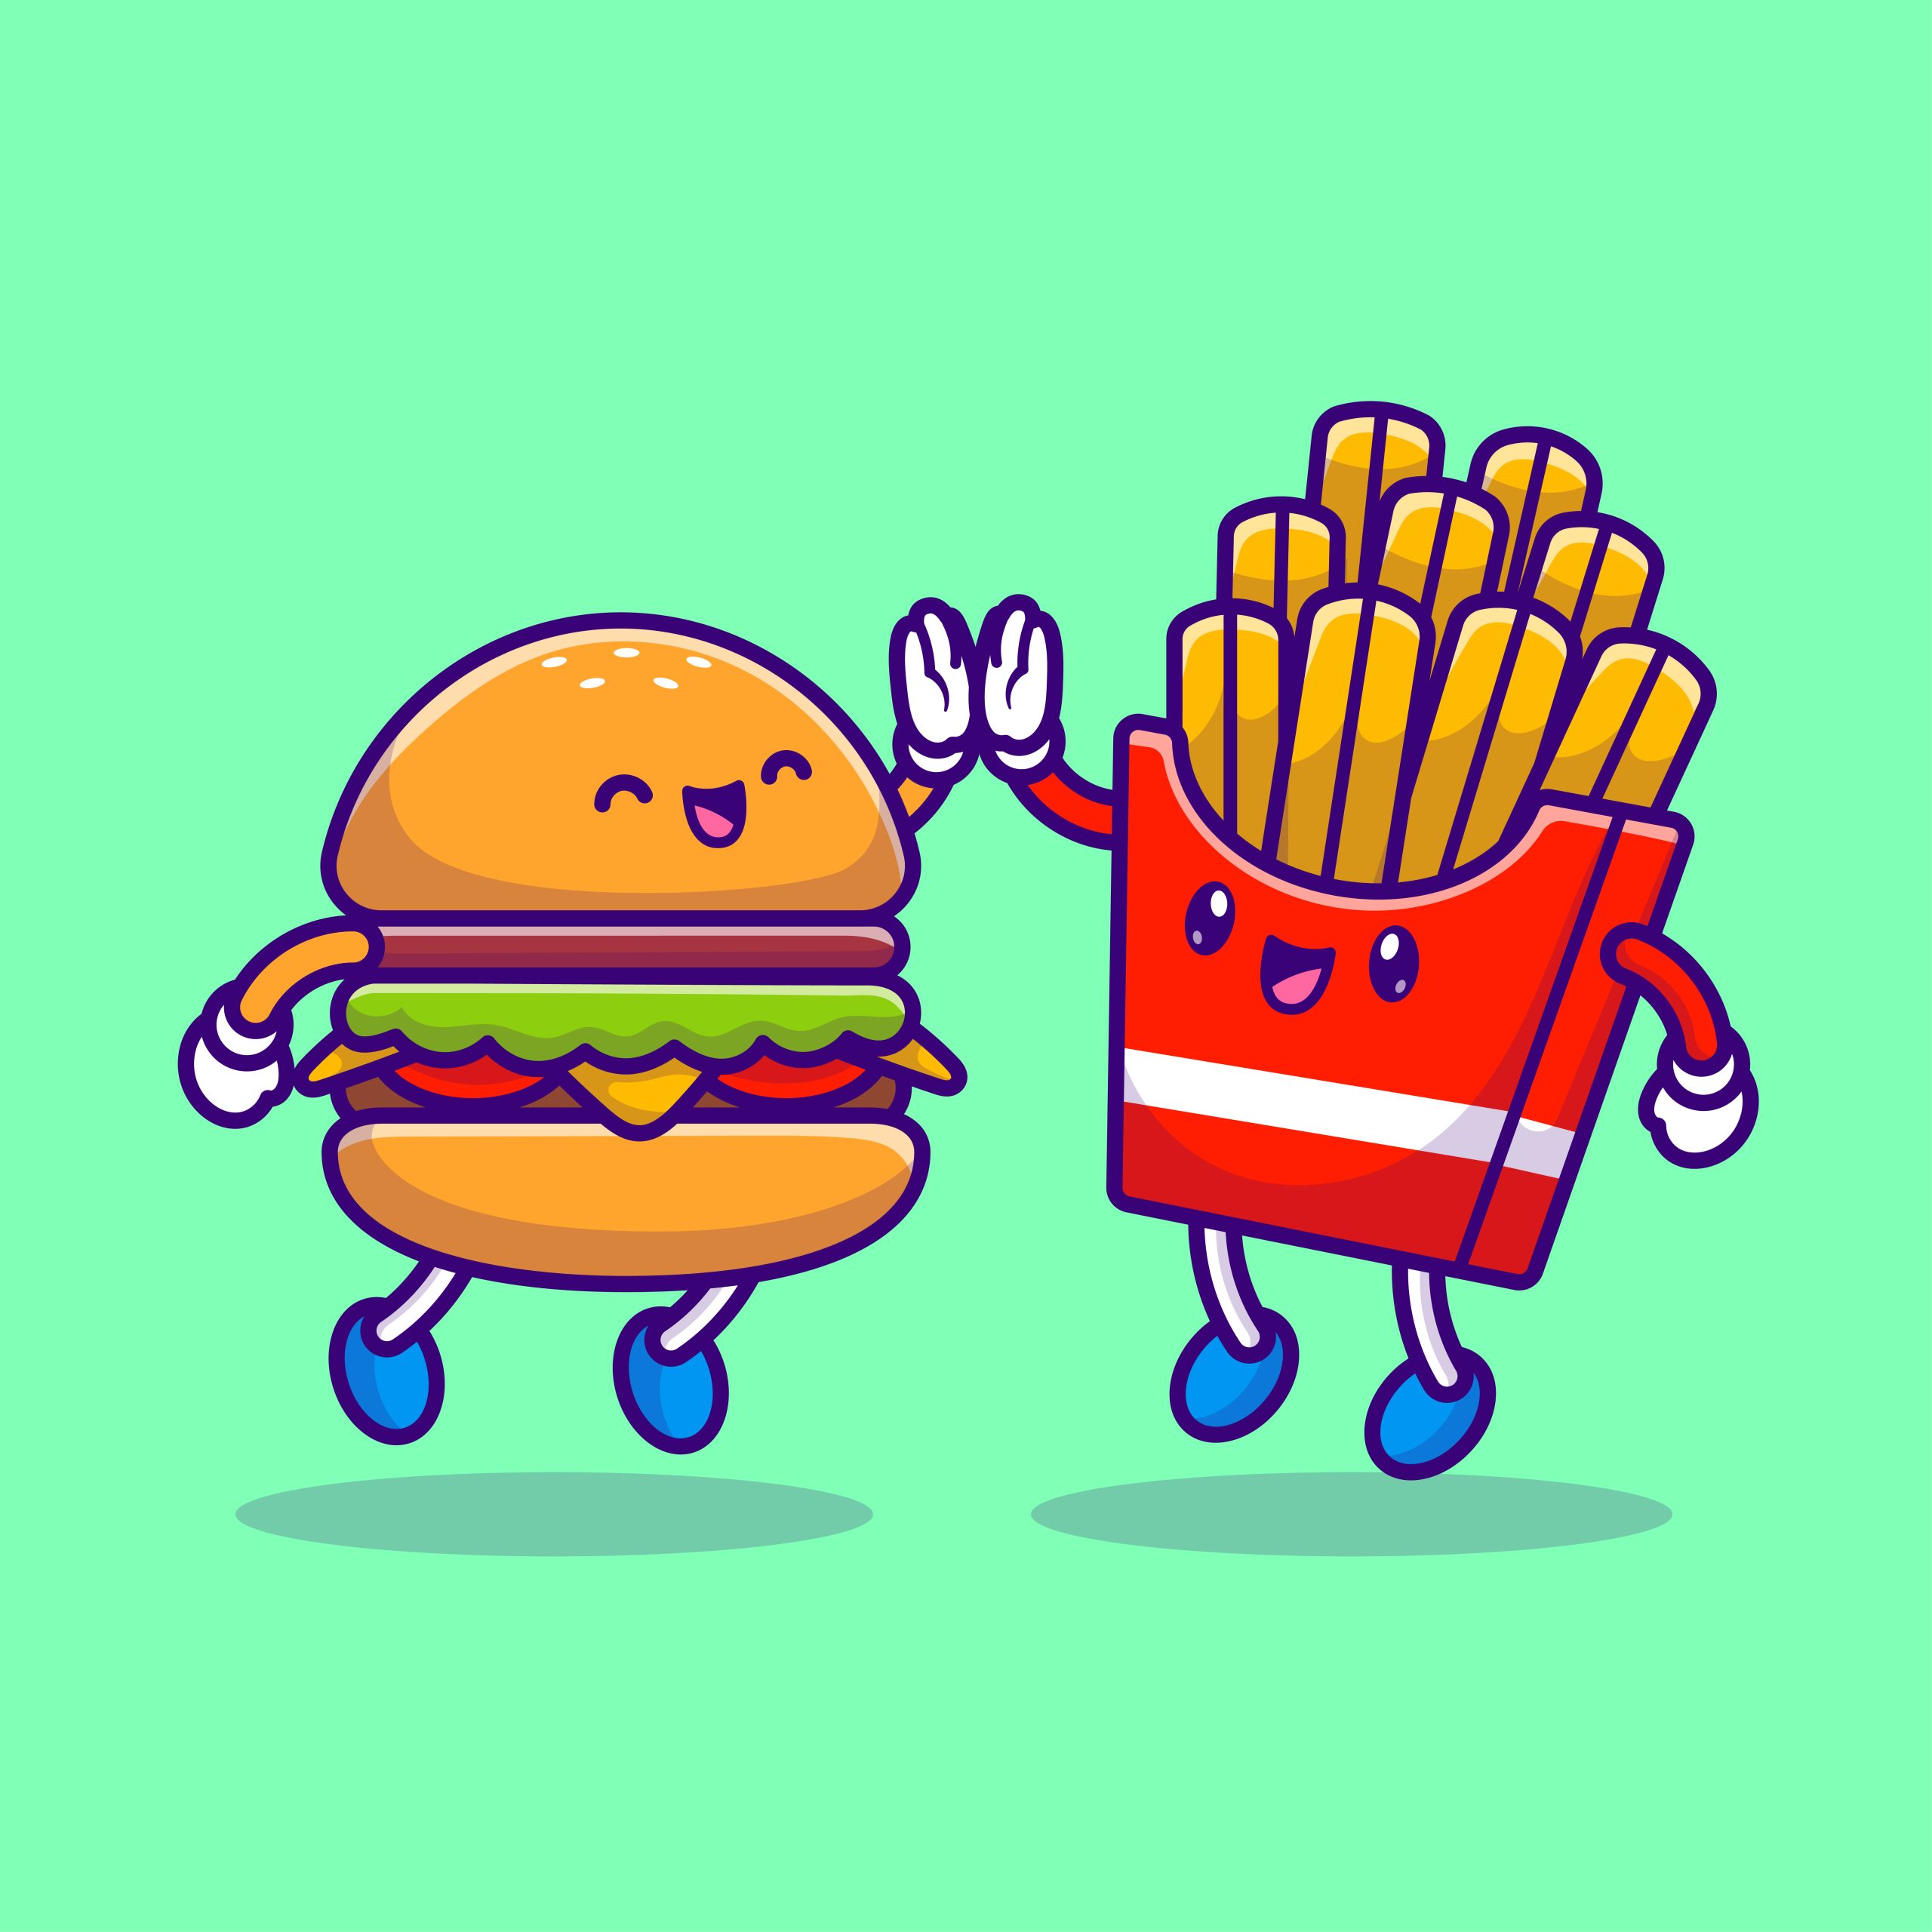 Hamburger and Fries high fiving